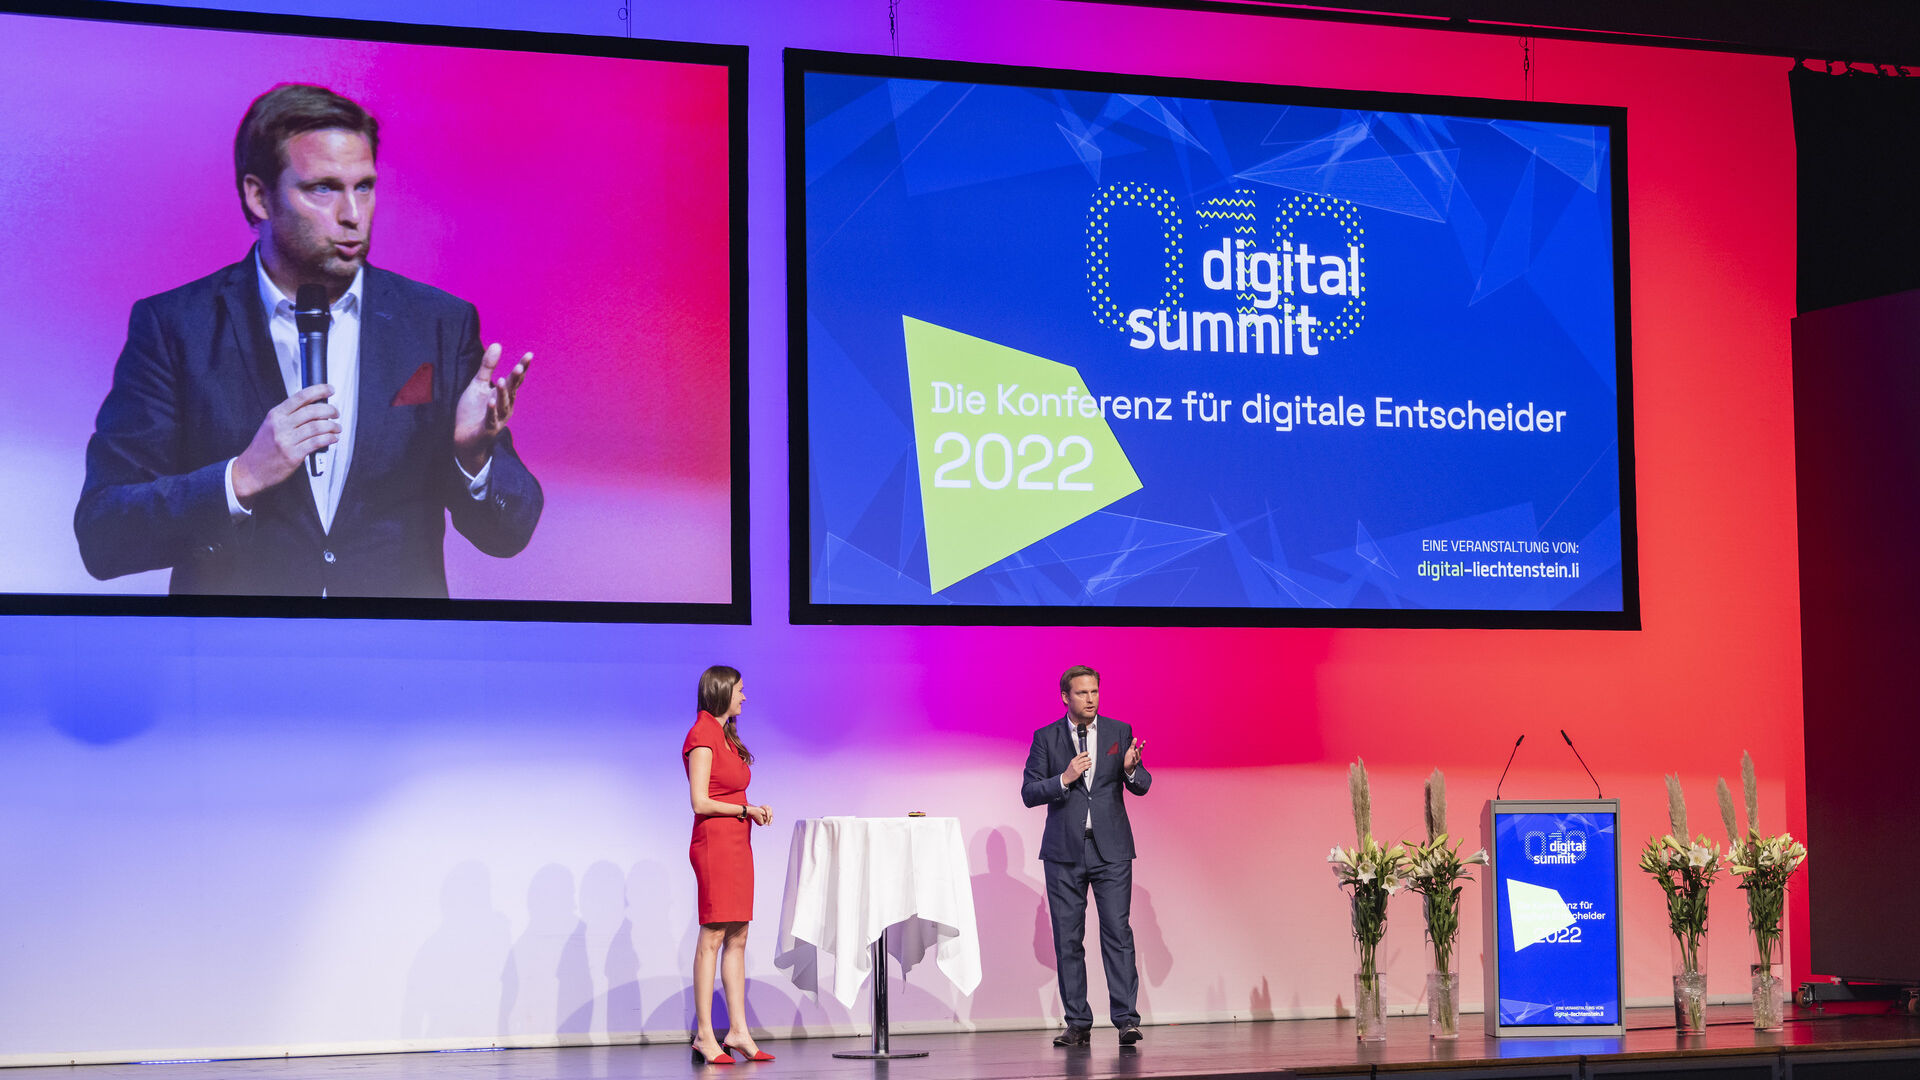 งาน “Digital Summit” ฉบับปี 2022 ที่เมืองวาดุซ